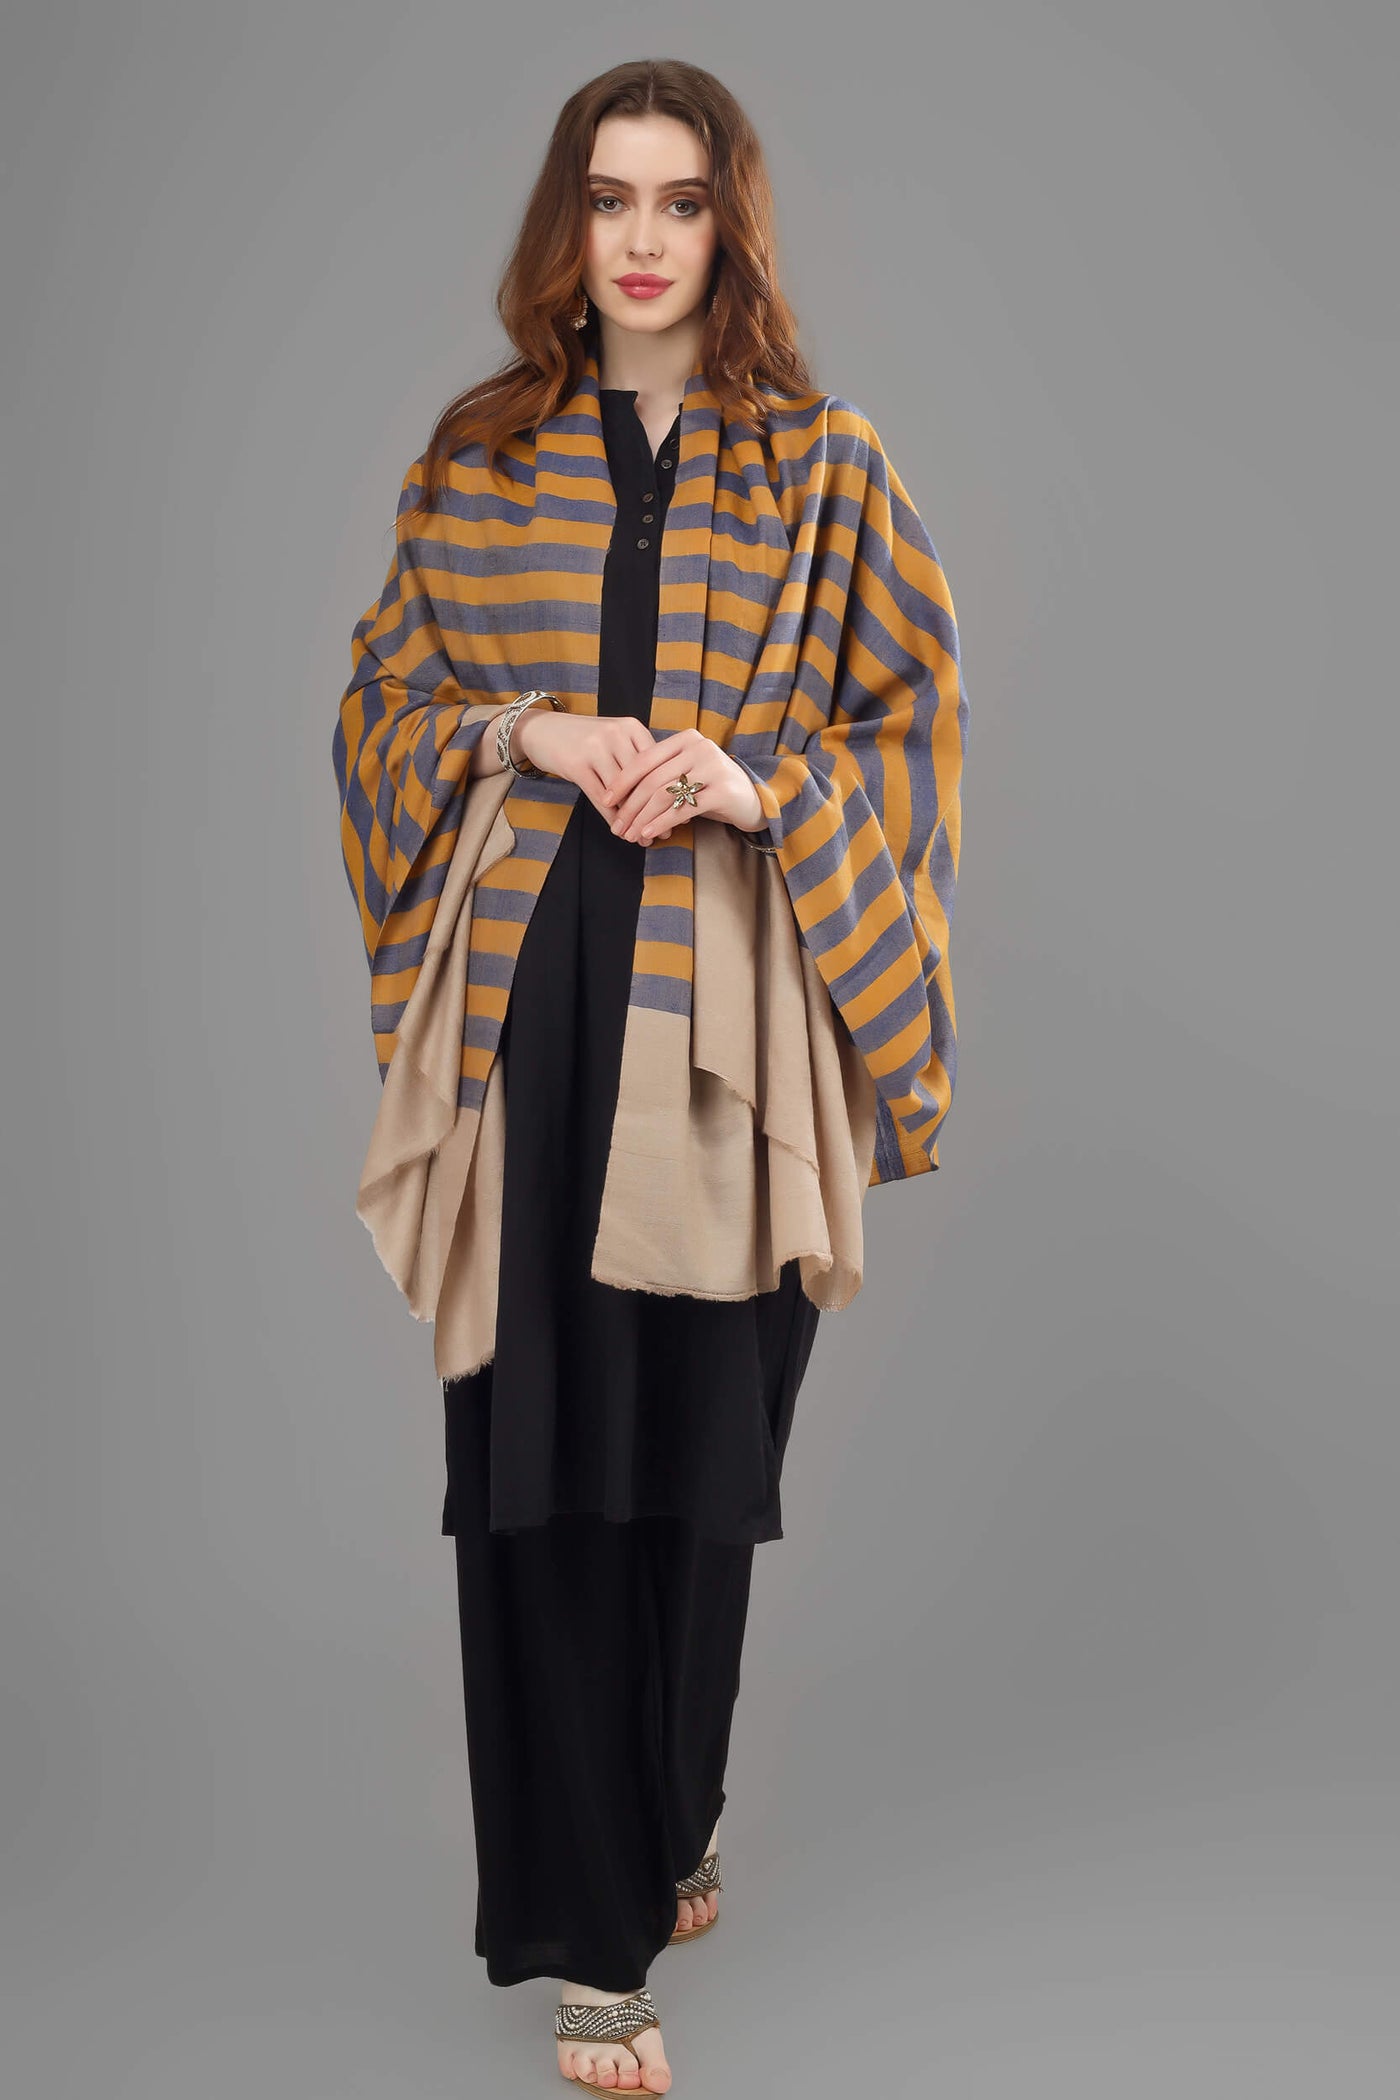 pashmina multiple color stripes shawl